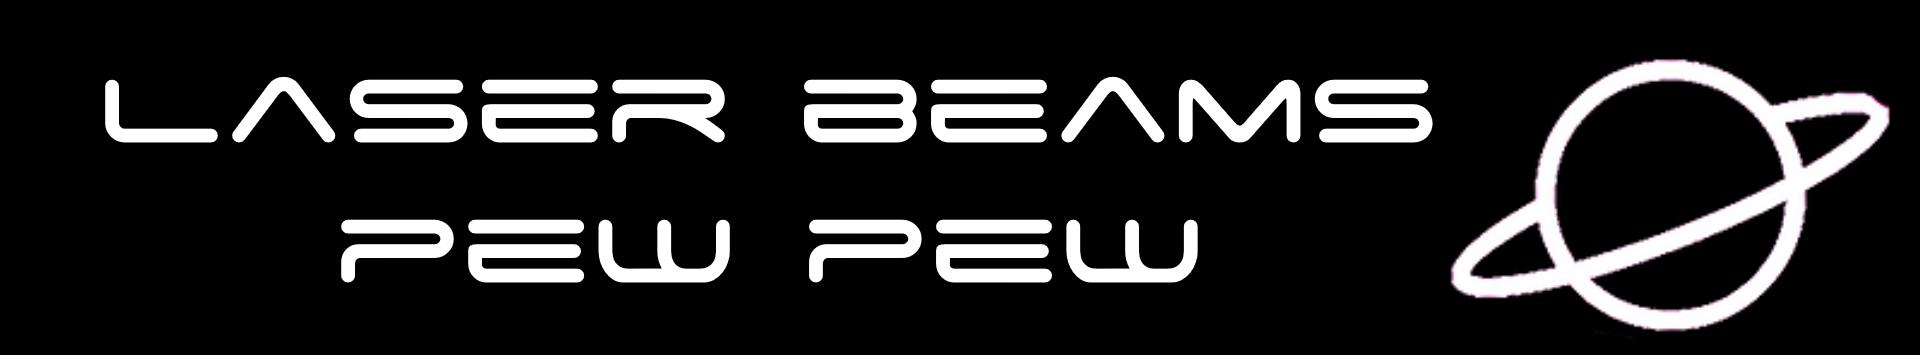 Laser beams pew pew